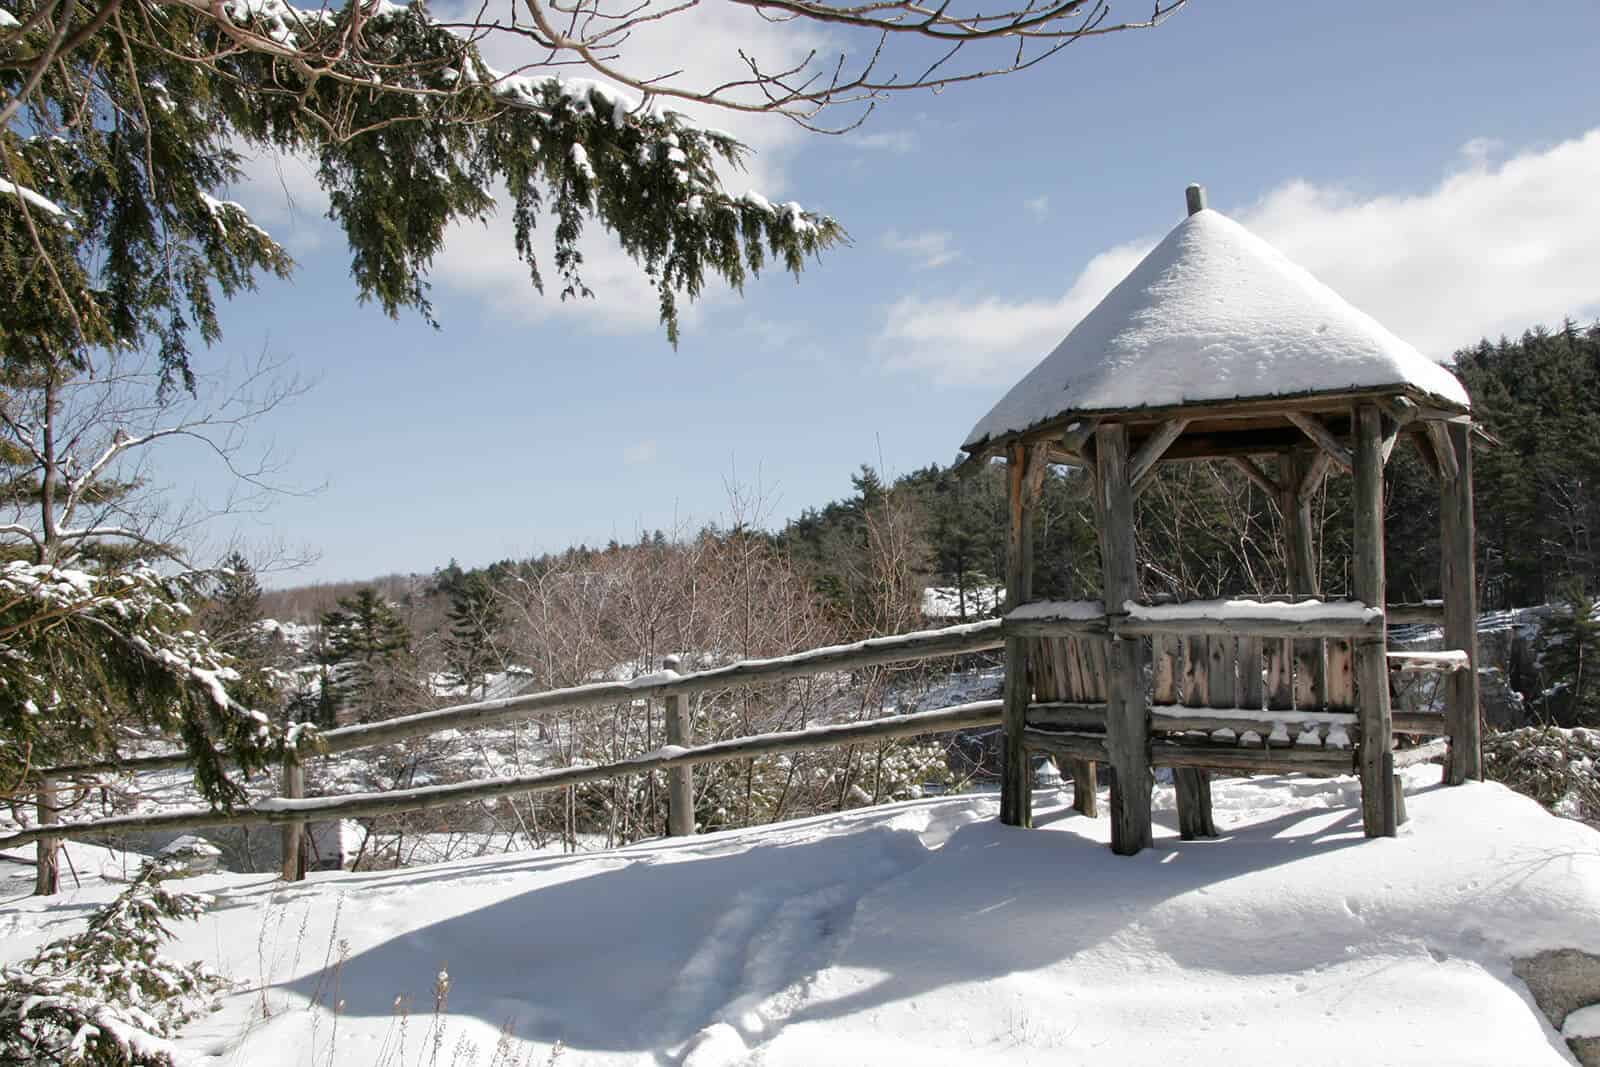 Mohonk summerhouse in the winter